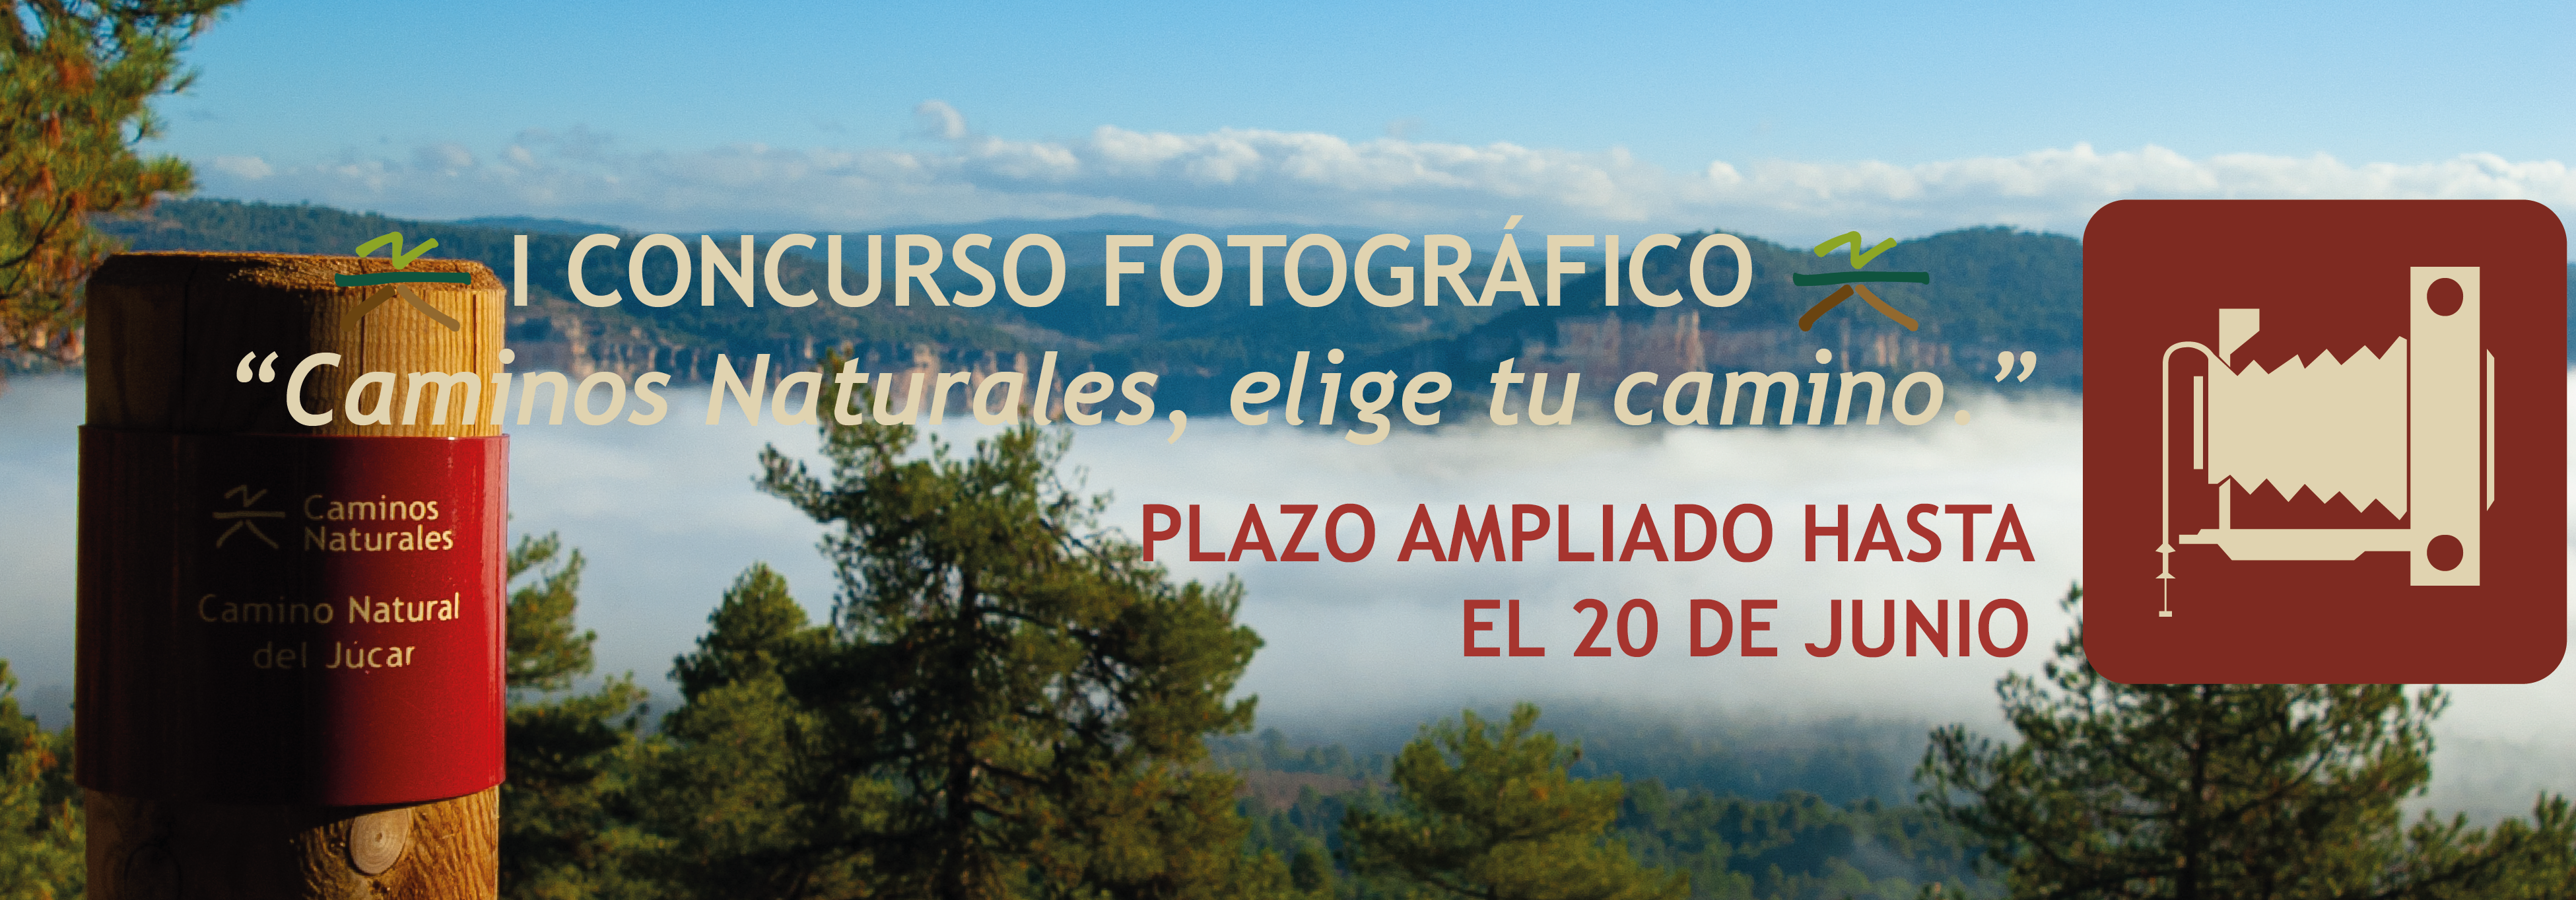 I Concurso de fotografía Caminos Naturales de España